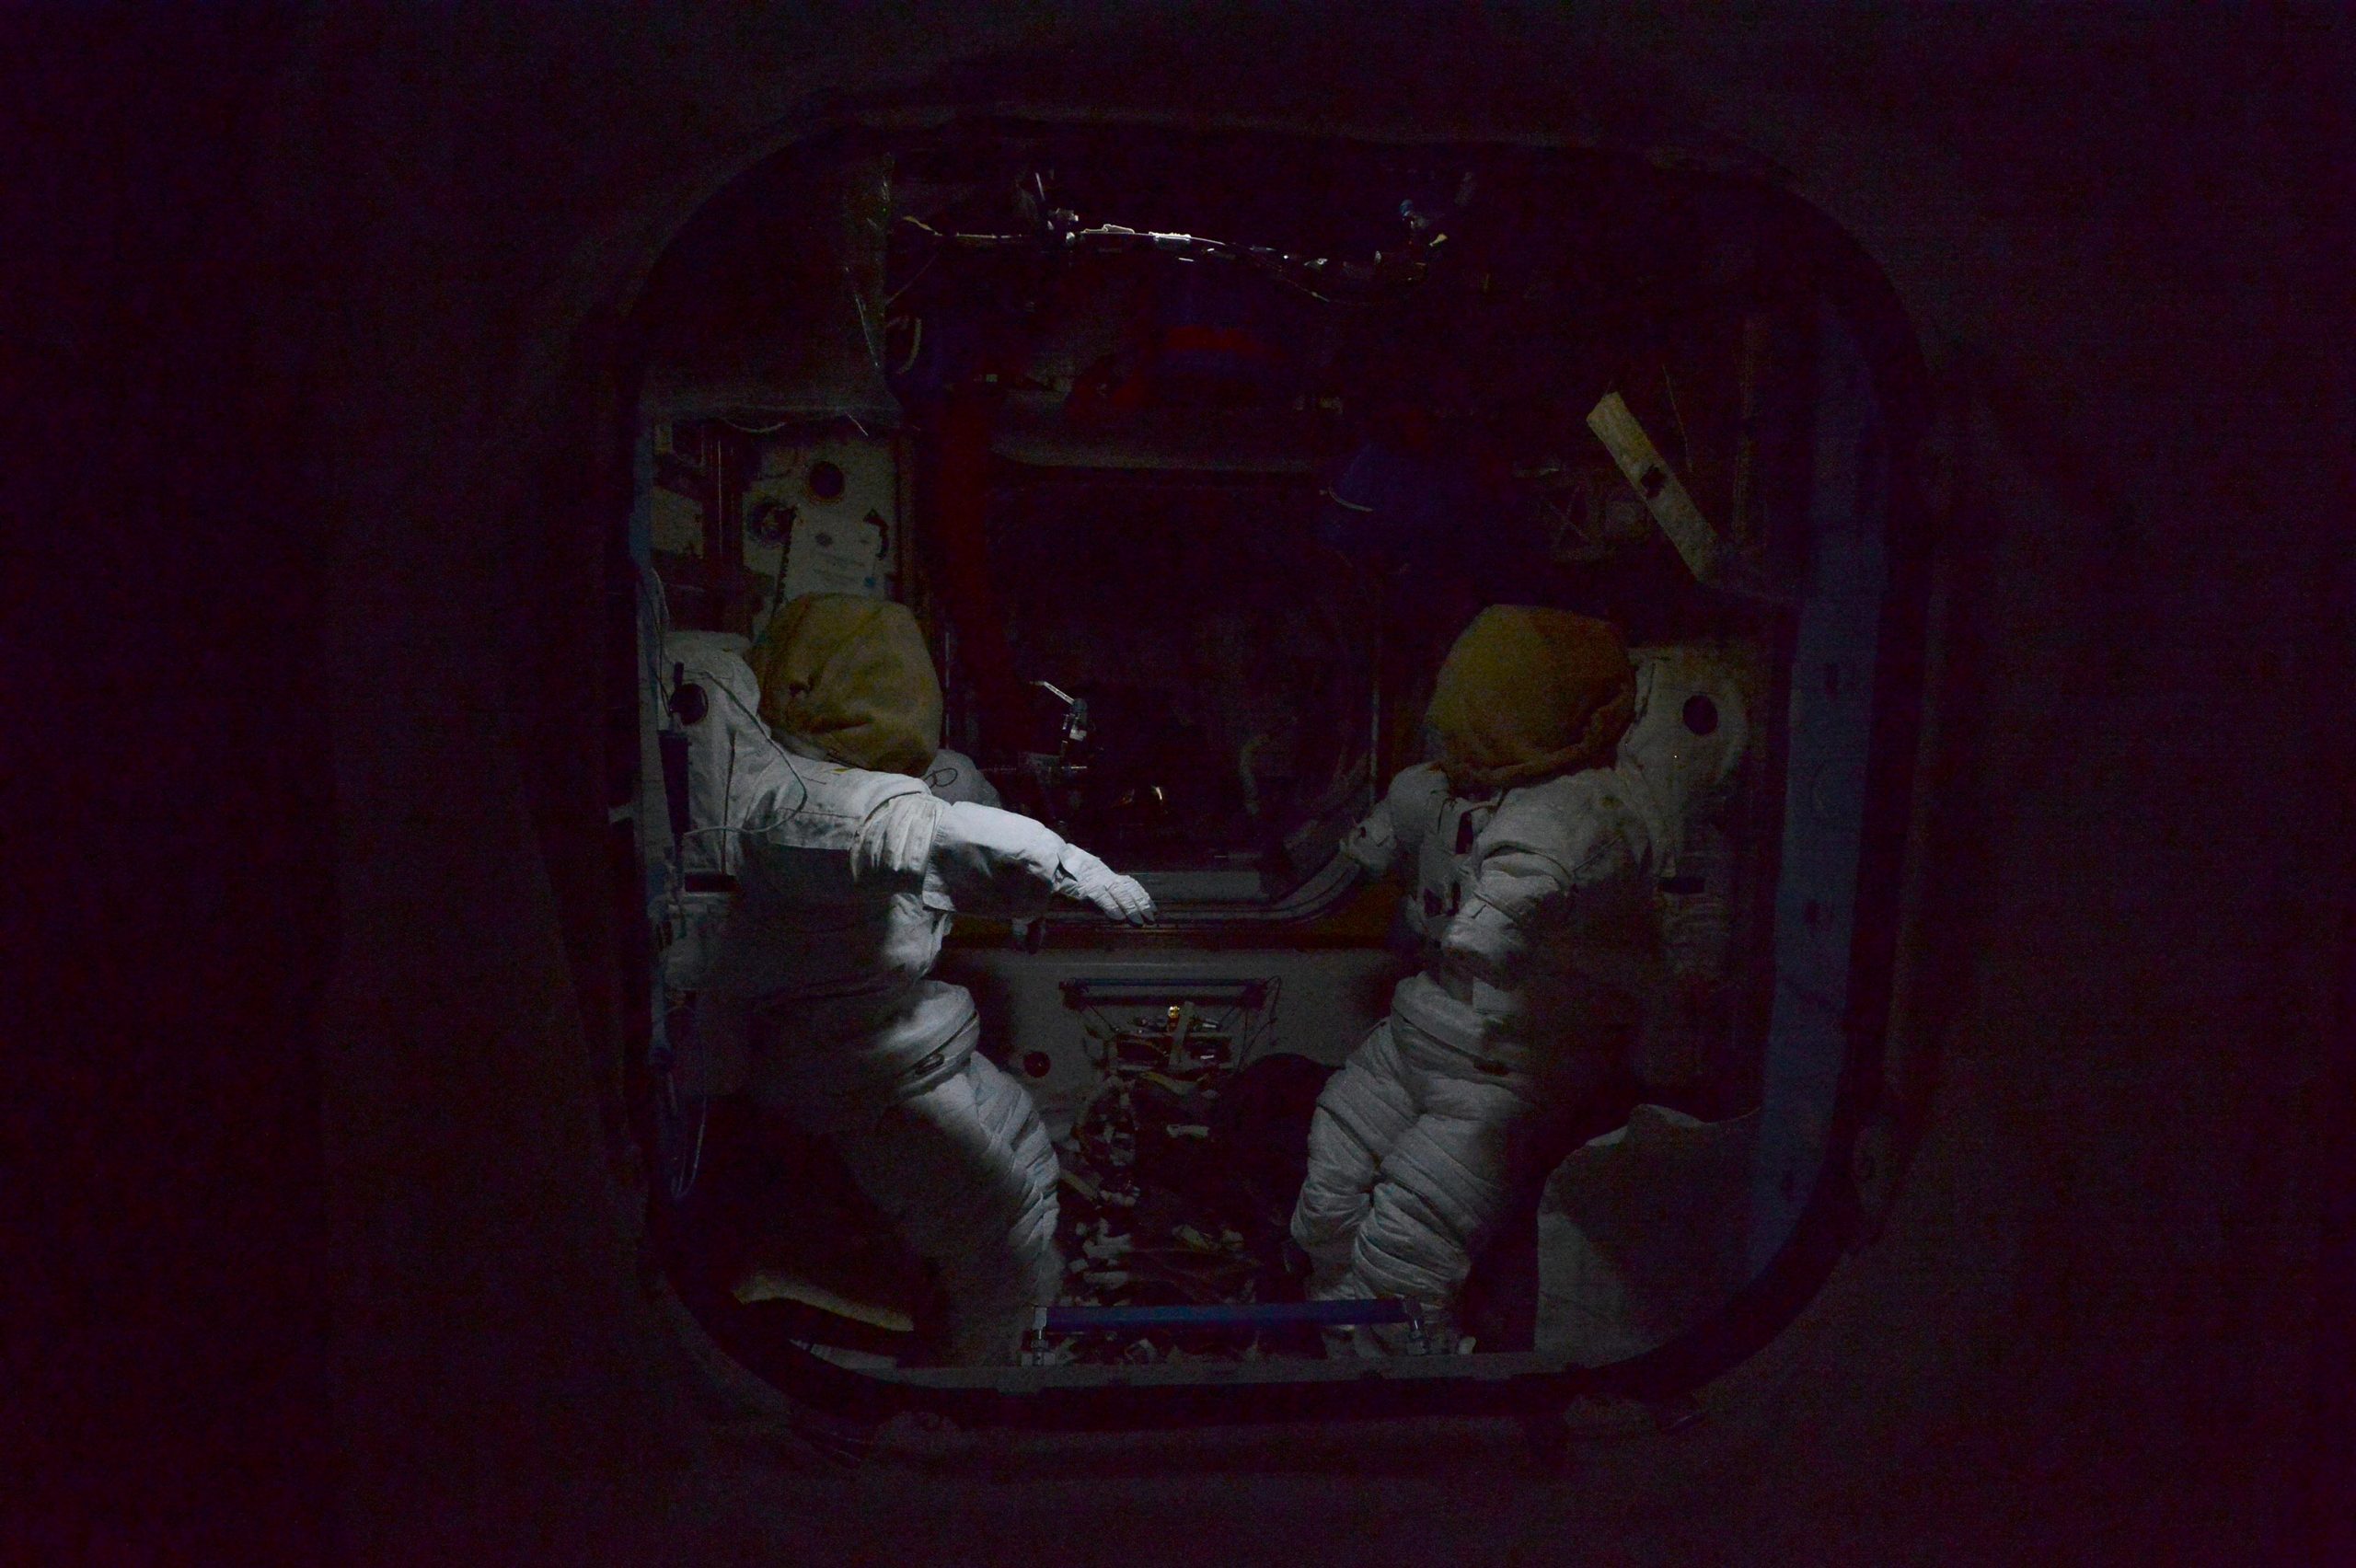 Включи станцию на ночь. Жуткие объекты в космосе. Пугающий космос. Жуткие снимки с космоса.